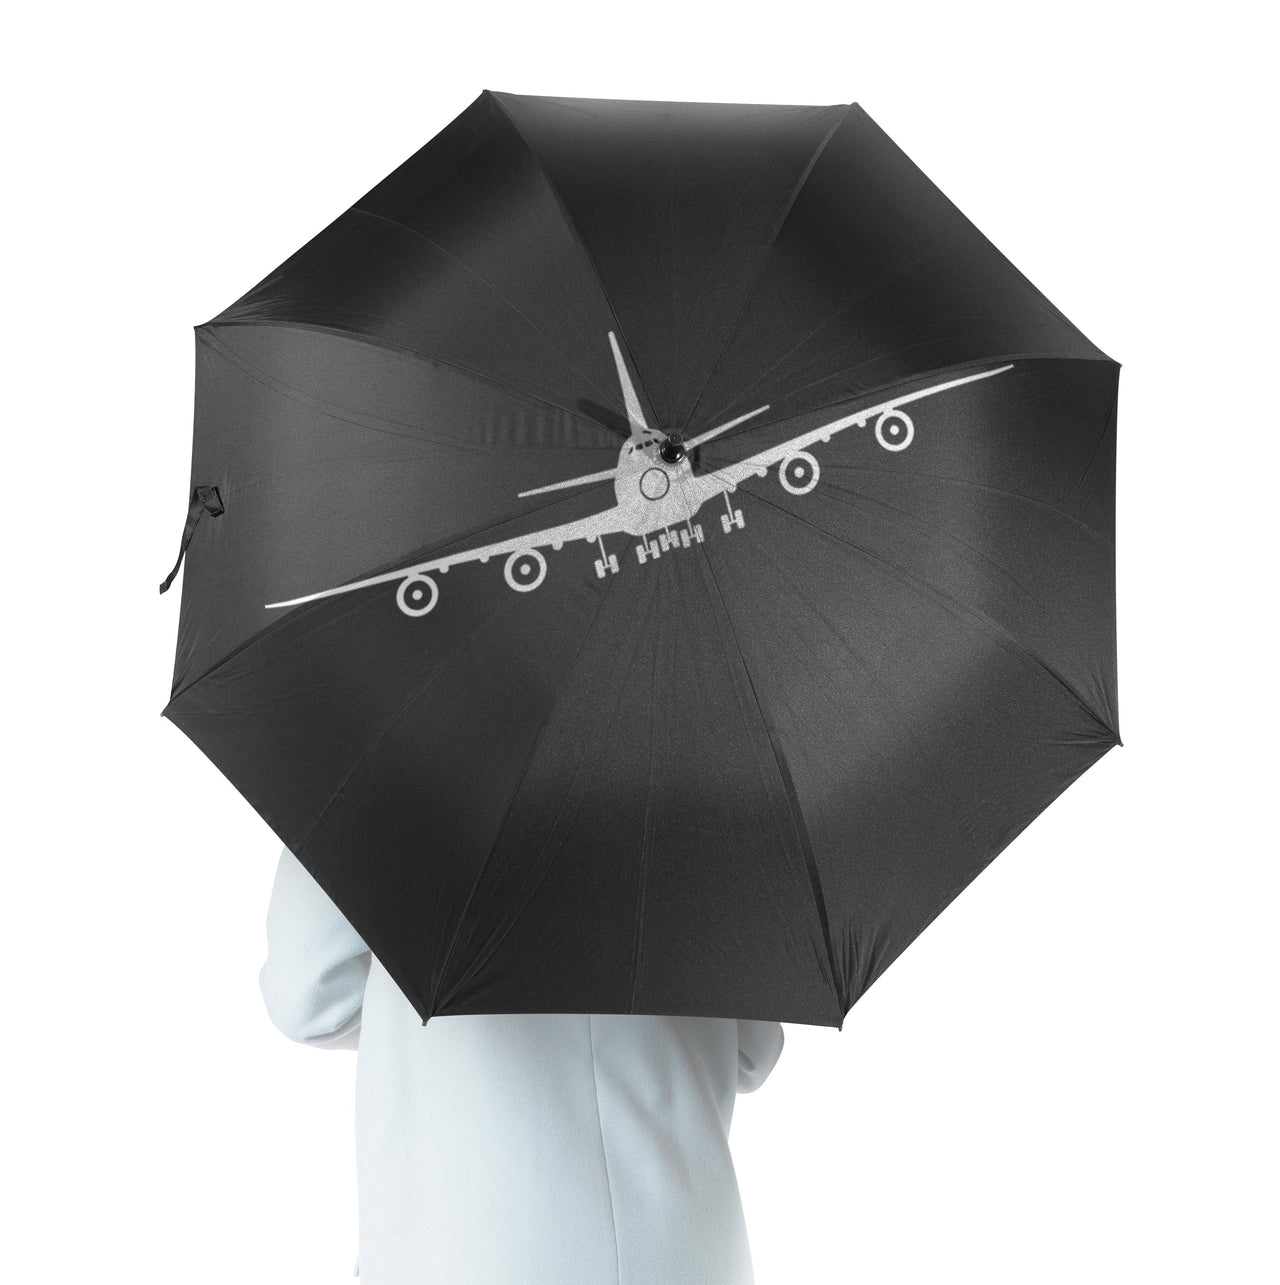 Boeing 747 Silhouette Designed Umbrella